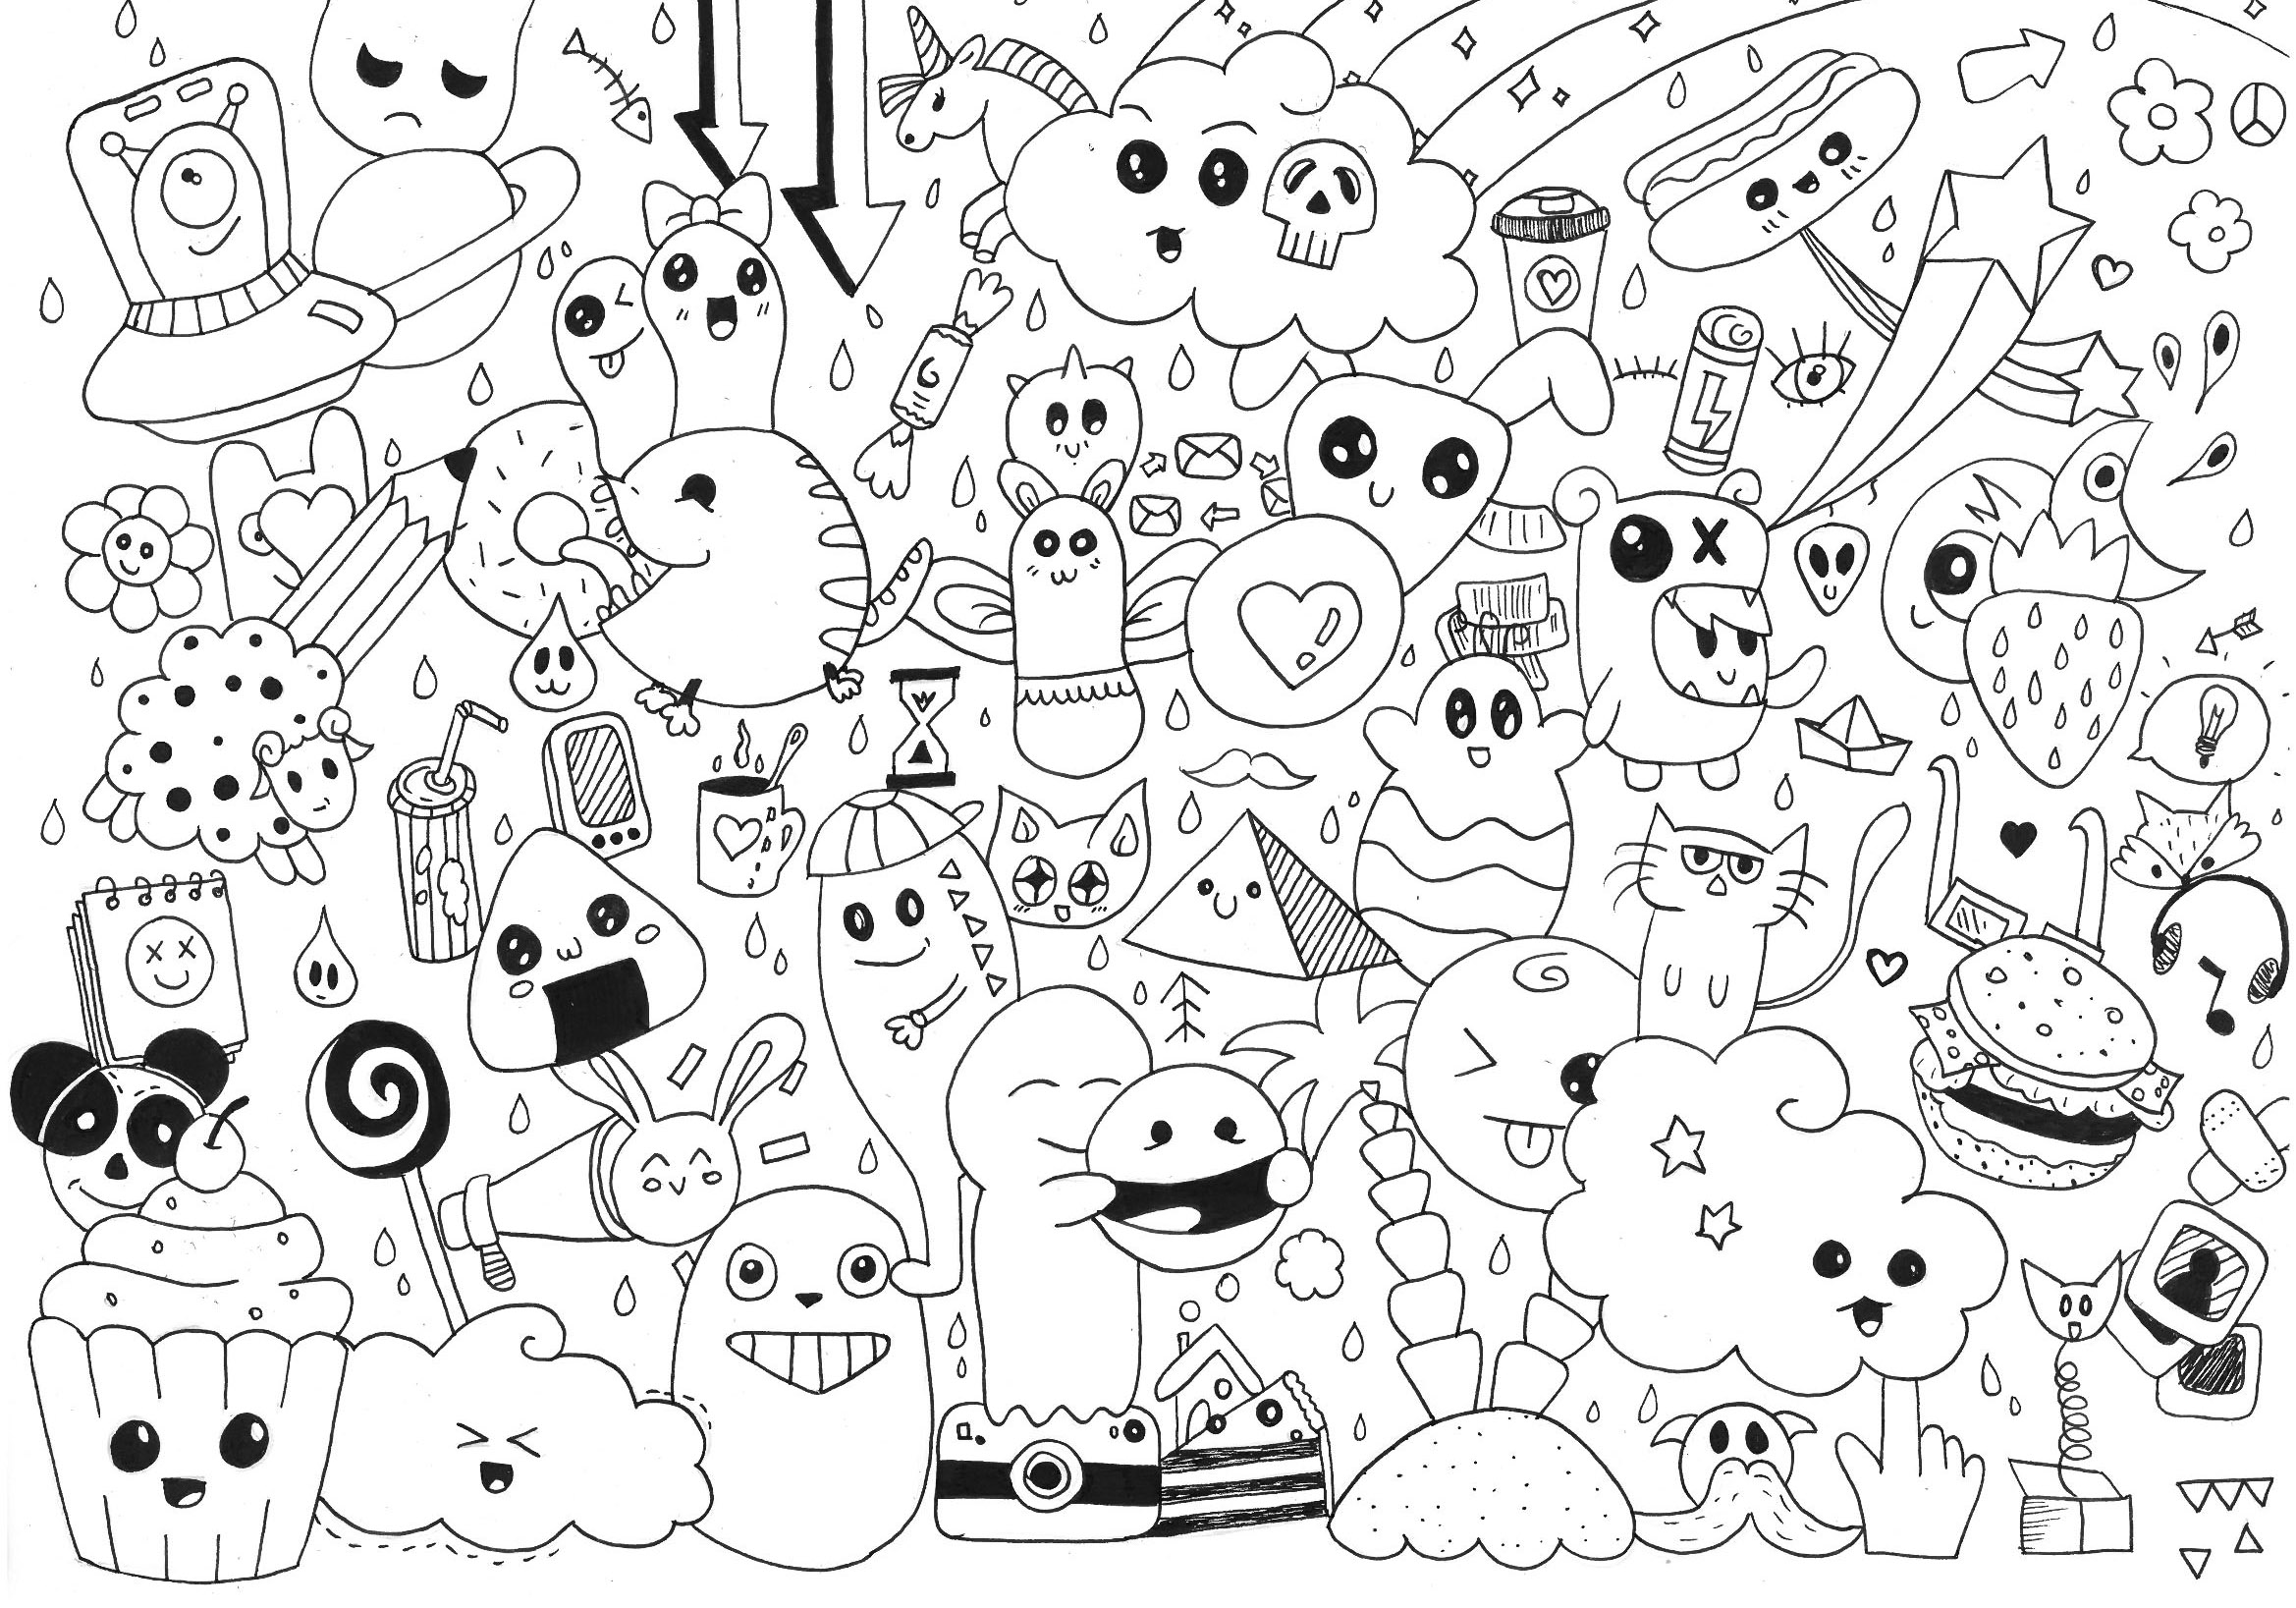 Desenhos simples para colorir para crianças de Doodle Art / Doodling